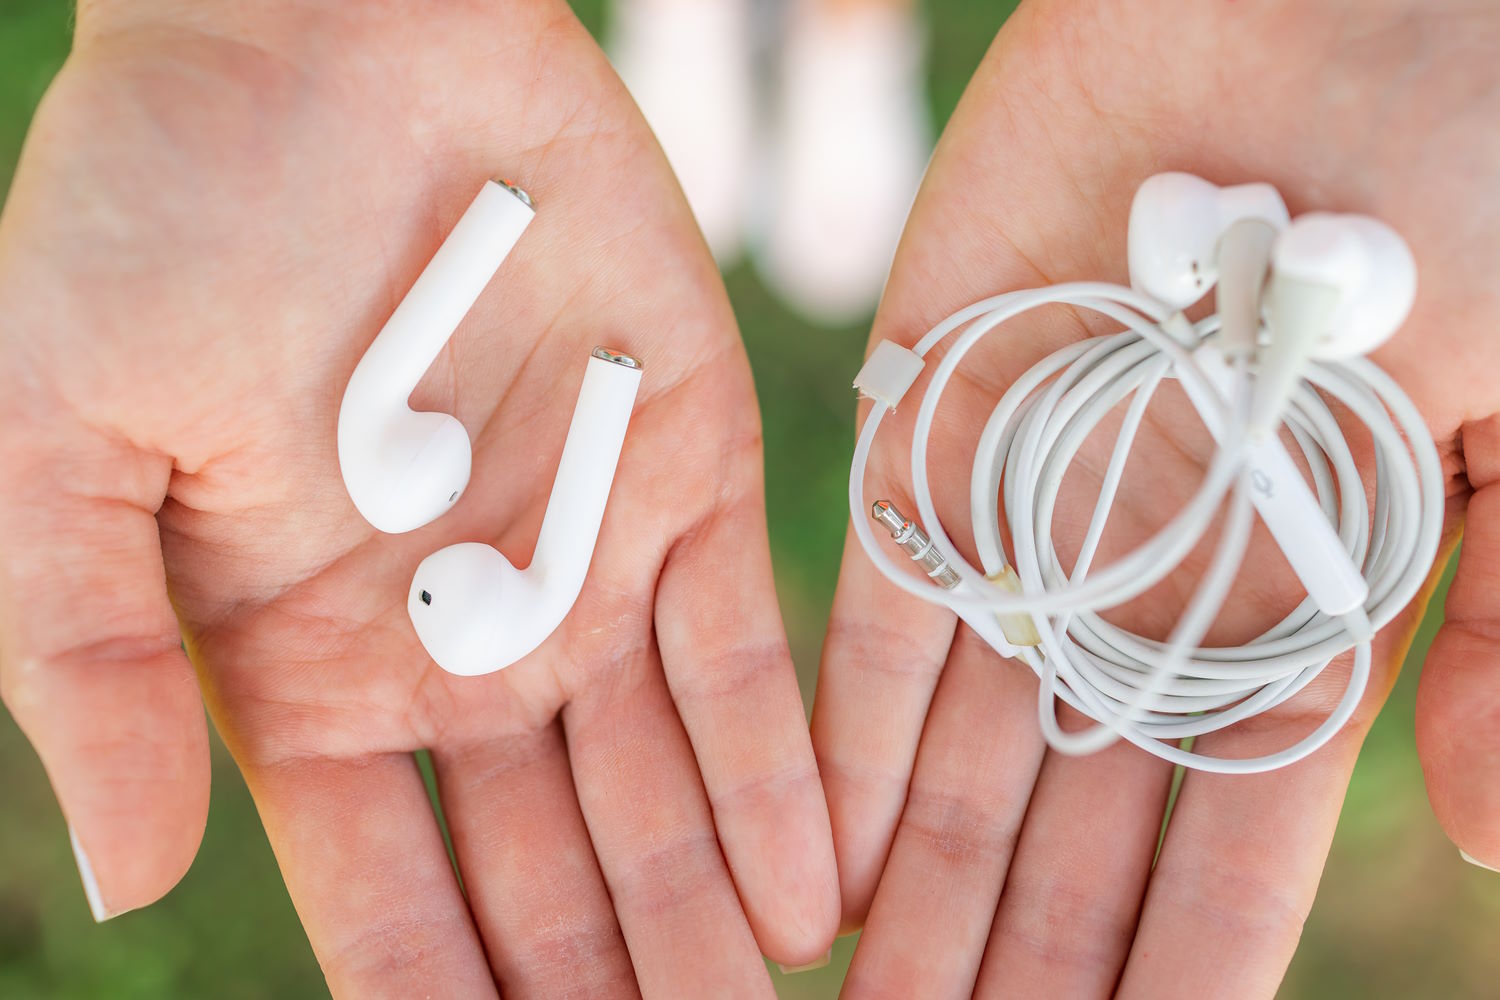 Una persona sostiene unos auriculares con cable en una mano y unos sin cable en la otra mano